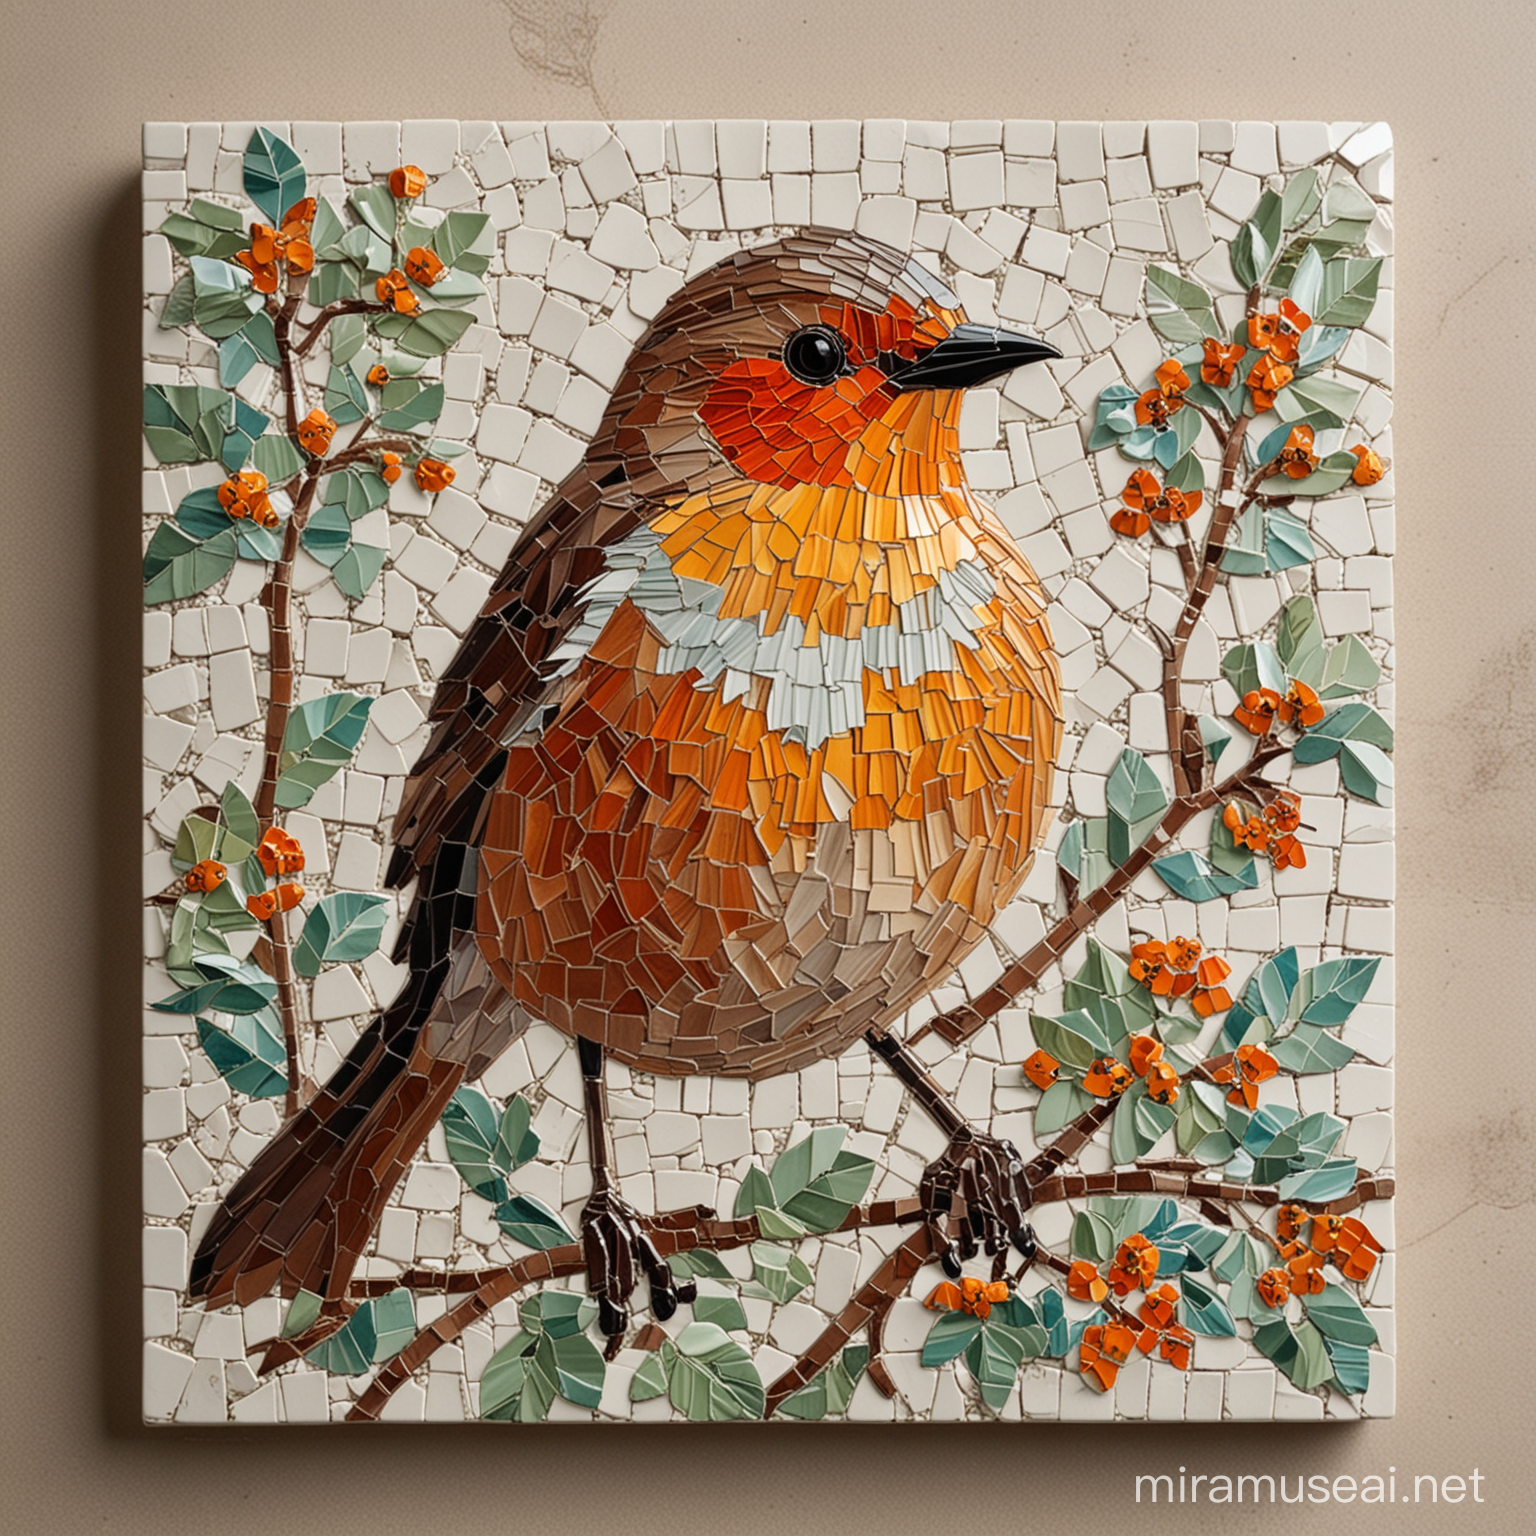 Robin bird  tile mosaic